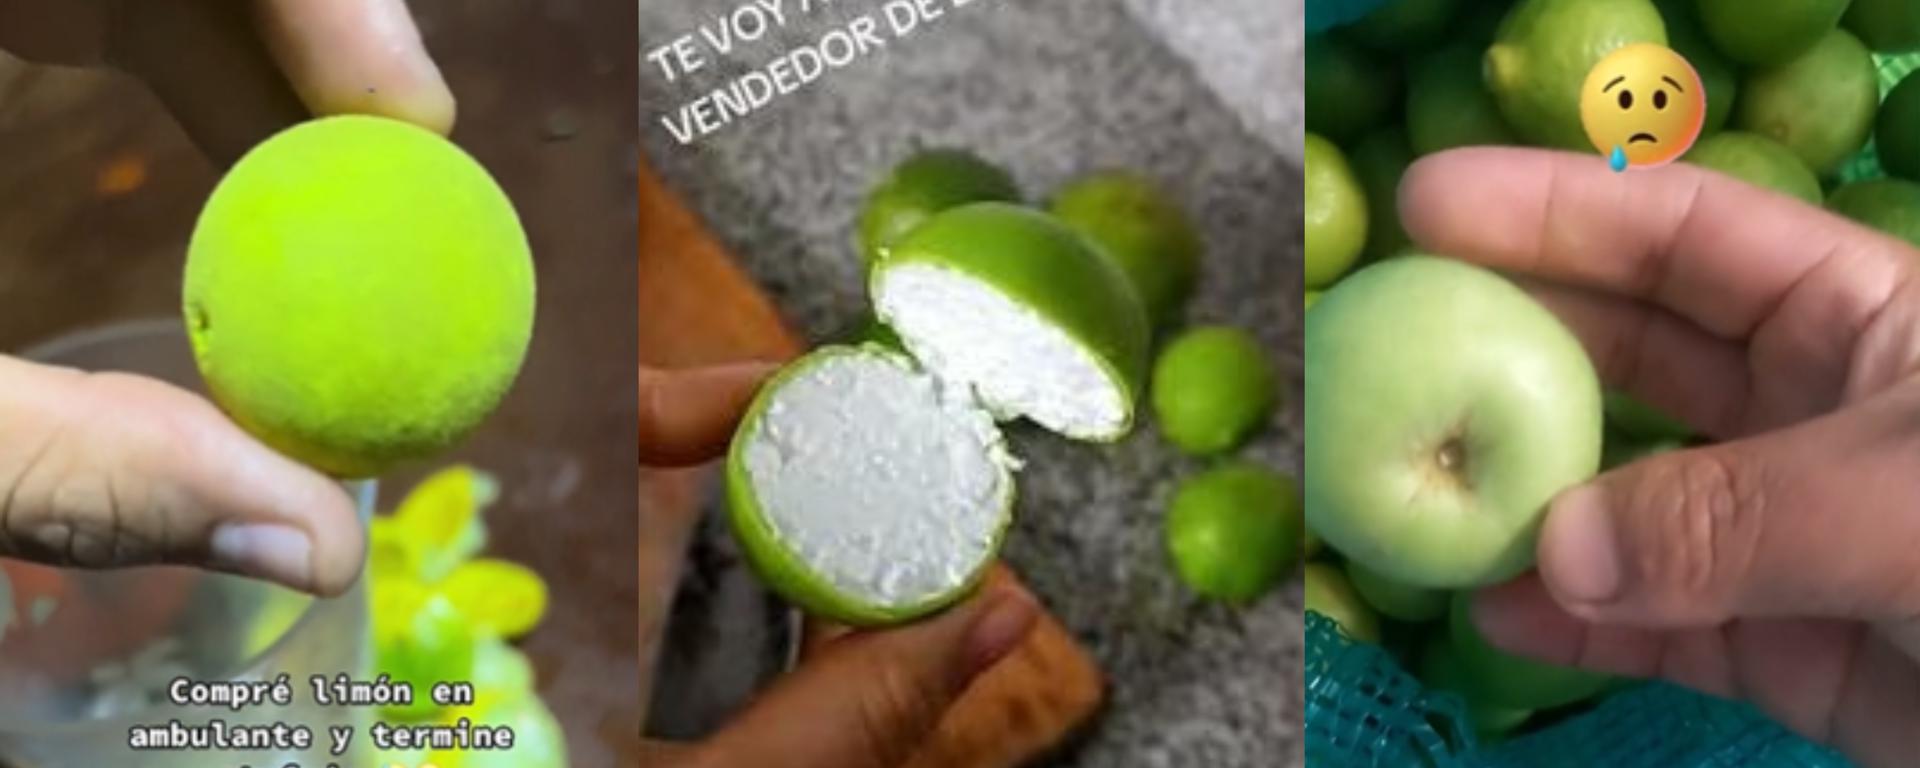 La estafa de los limones: ciudadanos han sido víctimas de distintas modalidades de engaño 